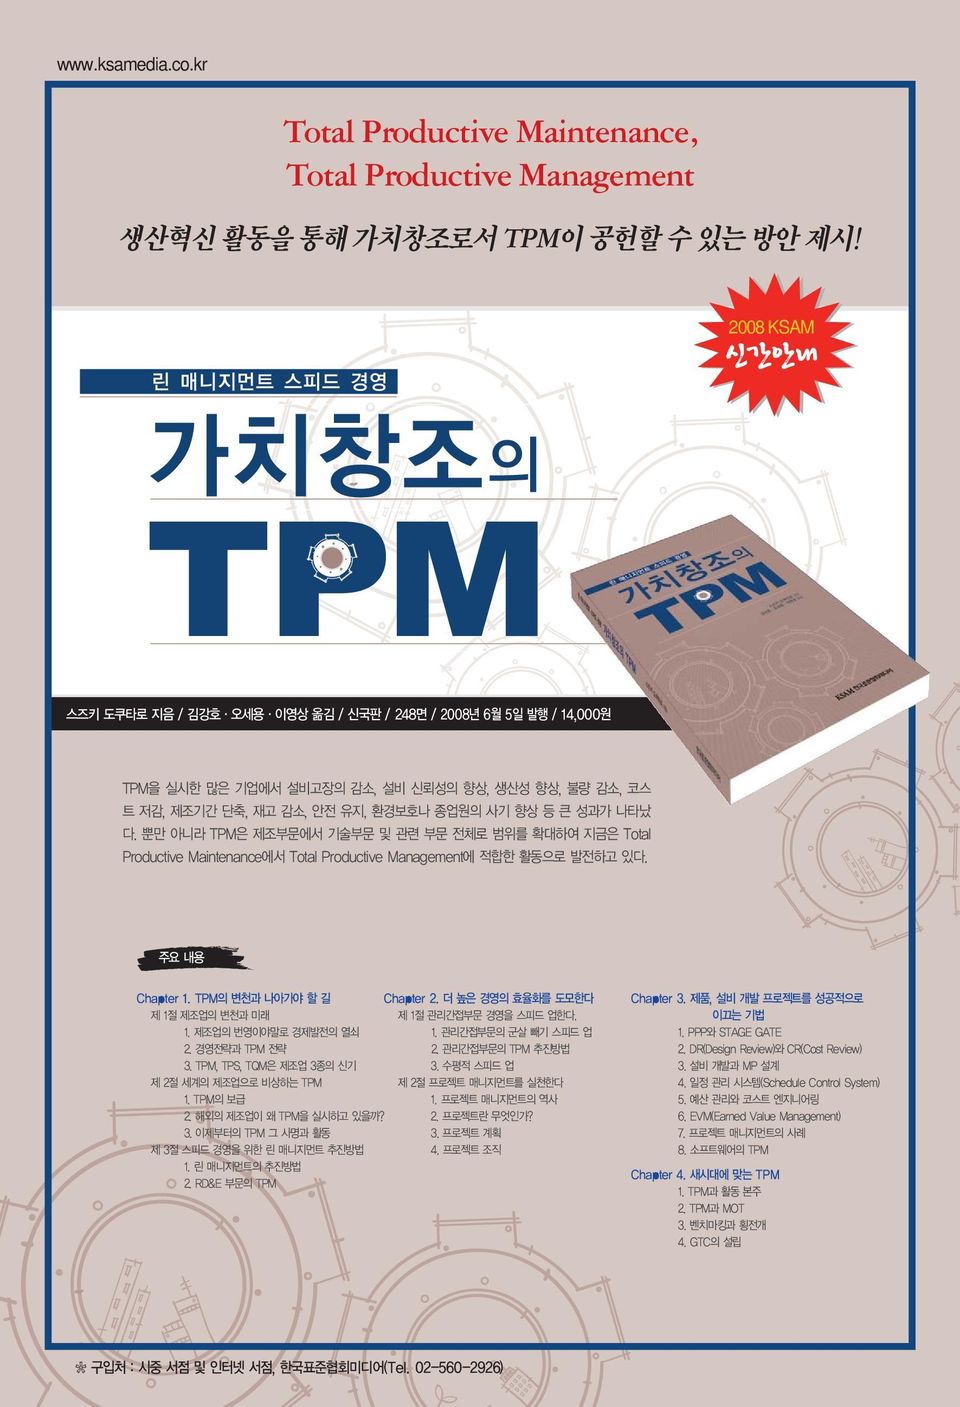 뿐만 아니라 TPM은 제조부문에서 기술부문 및 관련 부문 전체로 범위를 확대하여 지금은 Total Productive Maintenance에서 Total Productive Management에 적합한 활동으로 발전하고 있다. 주요 내용 Chapter 1. TPM의 변천과 나아가야 할 길 제1절제조업의변천과 미래 1.